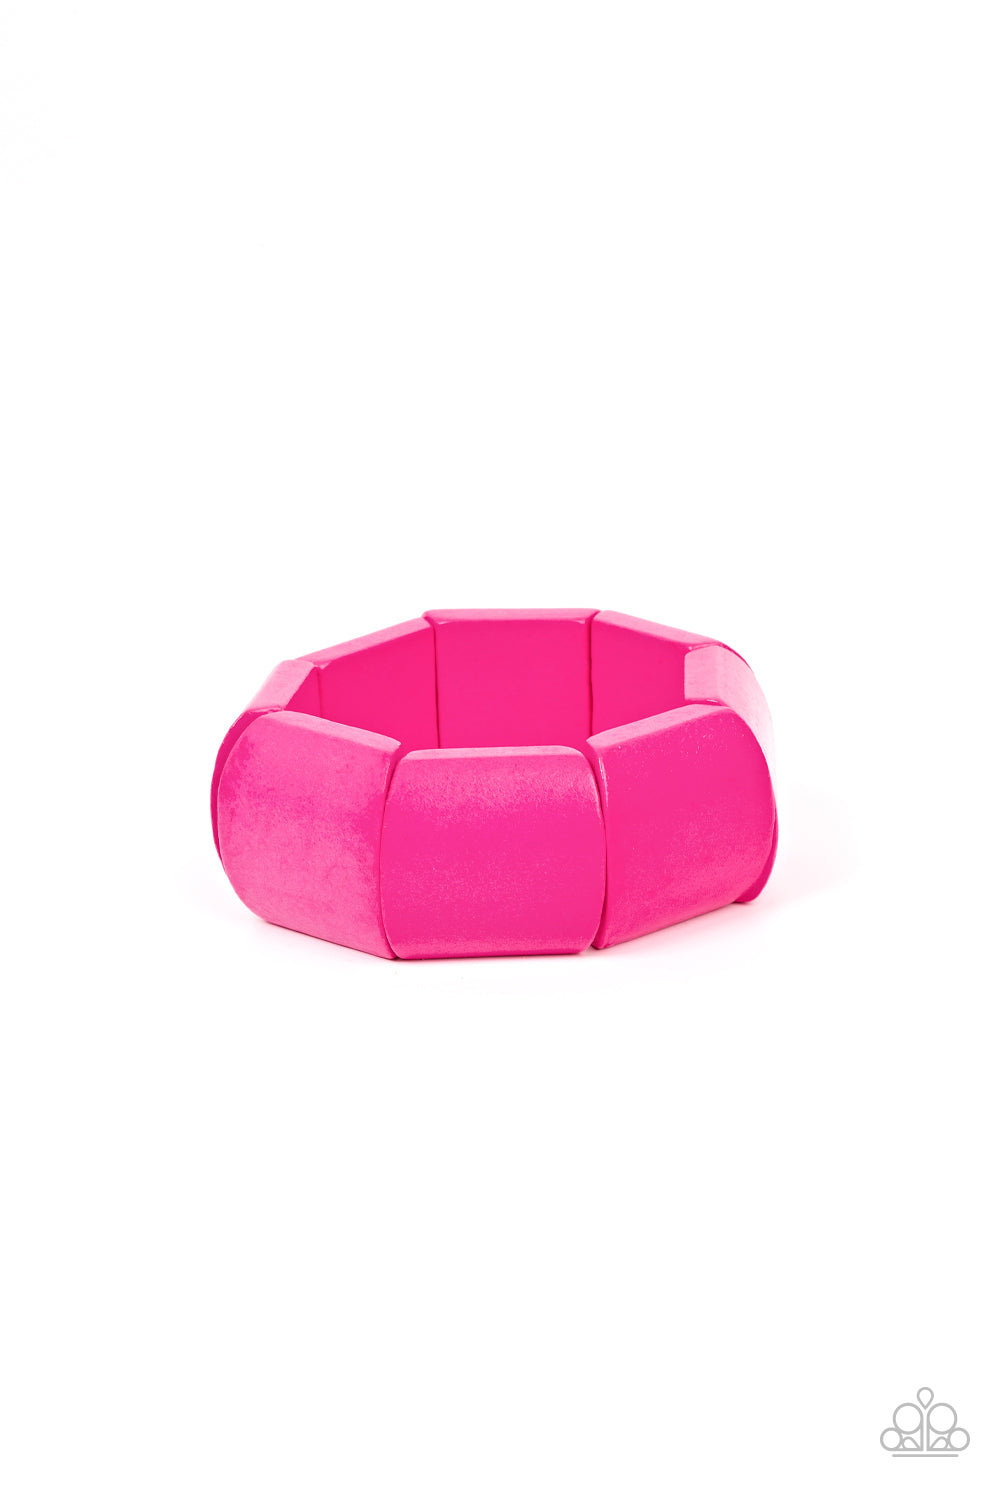 Coconut Cove - pink - Paparazzi bracelet